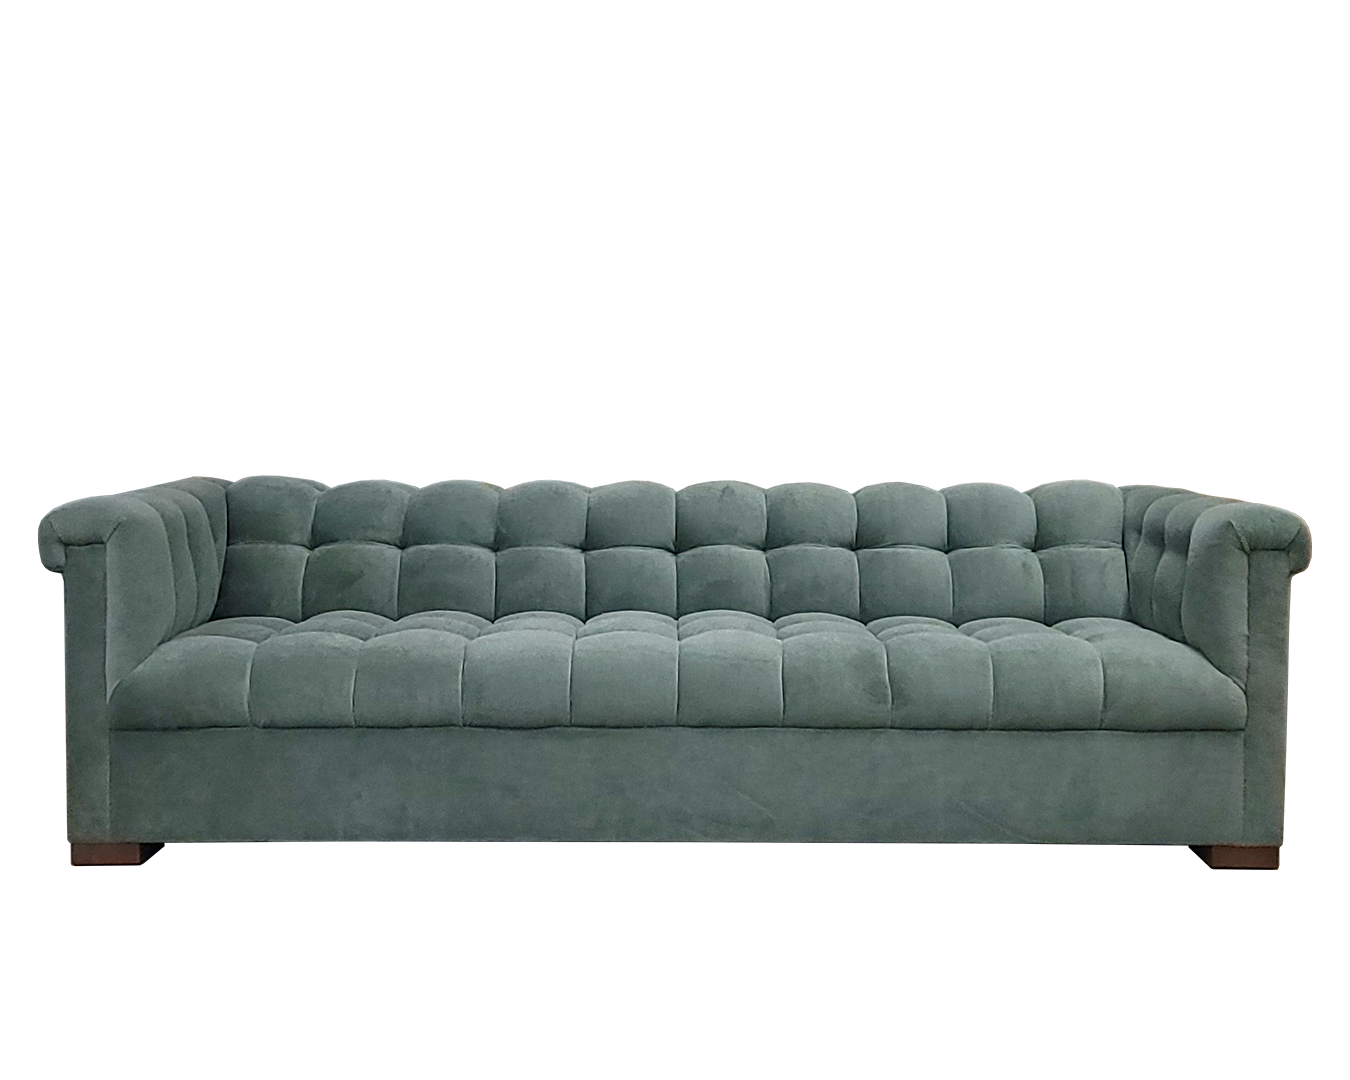 Hamilton Sofa - Front2.png